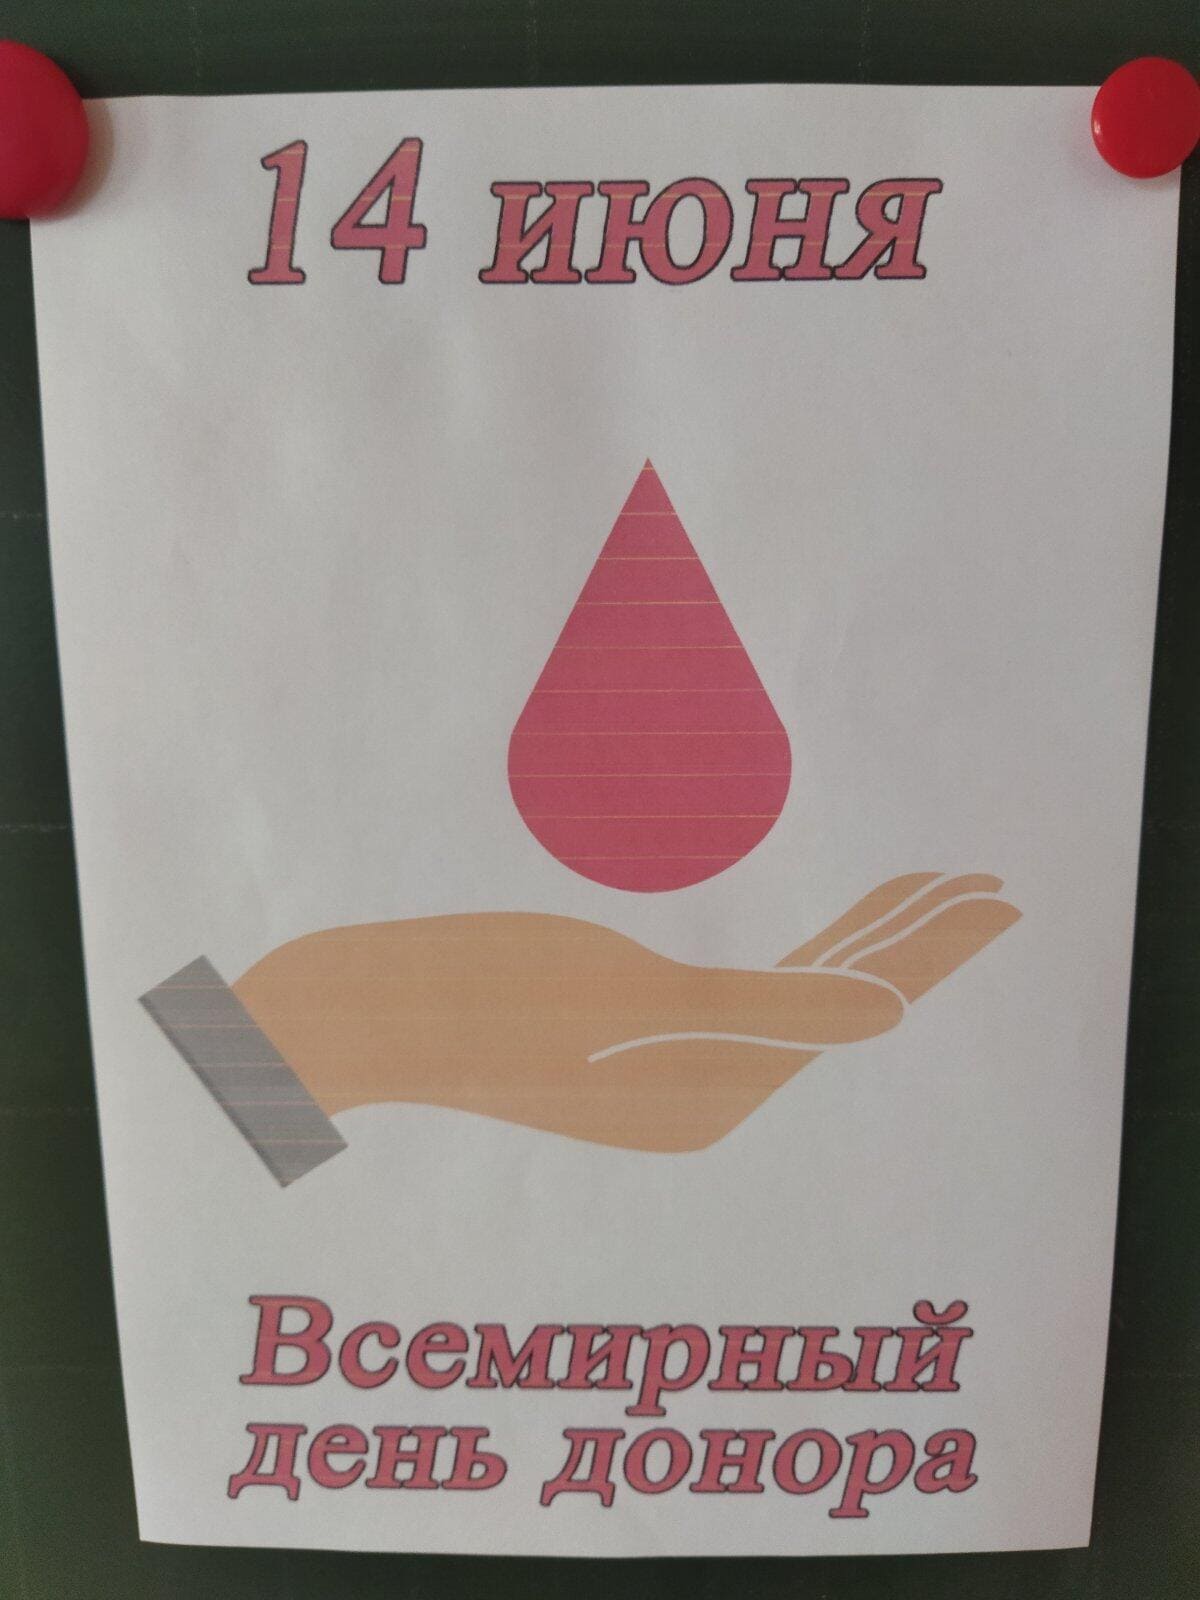 Всемирный день донора крови..